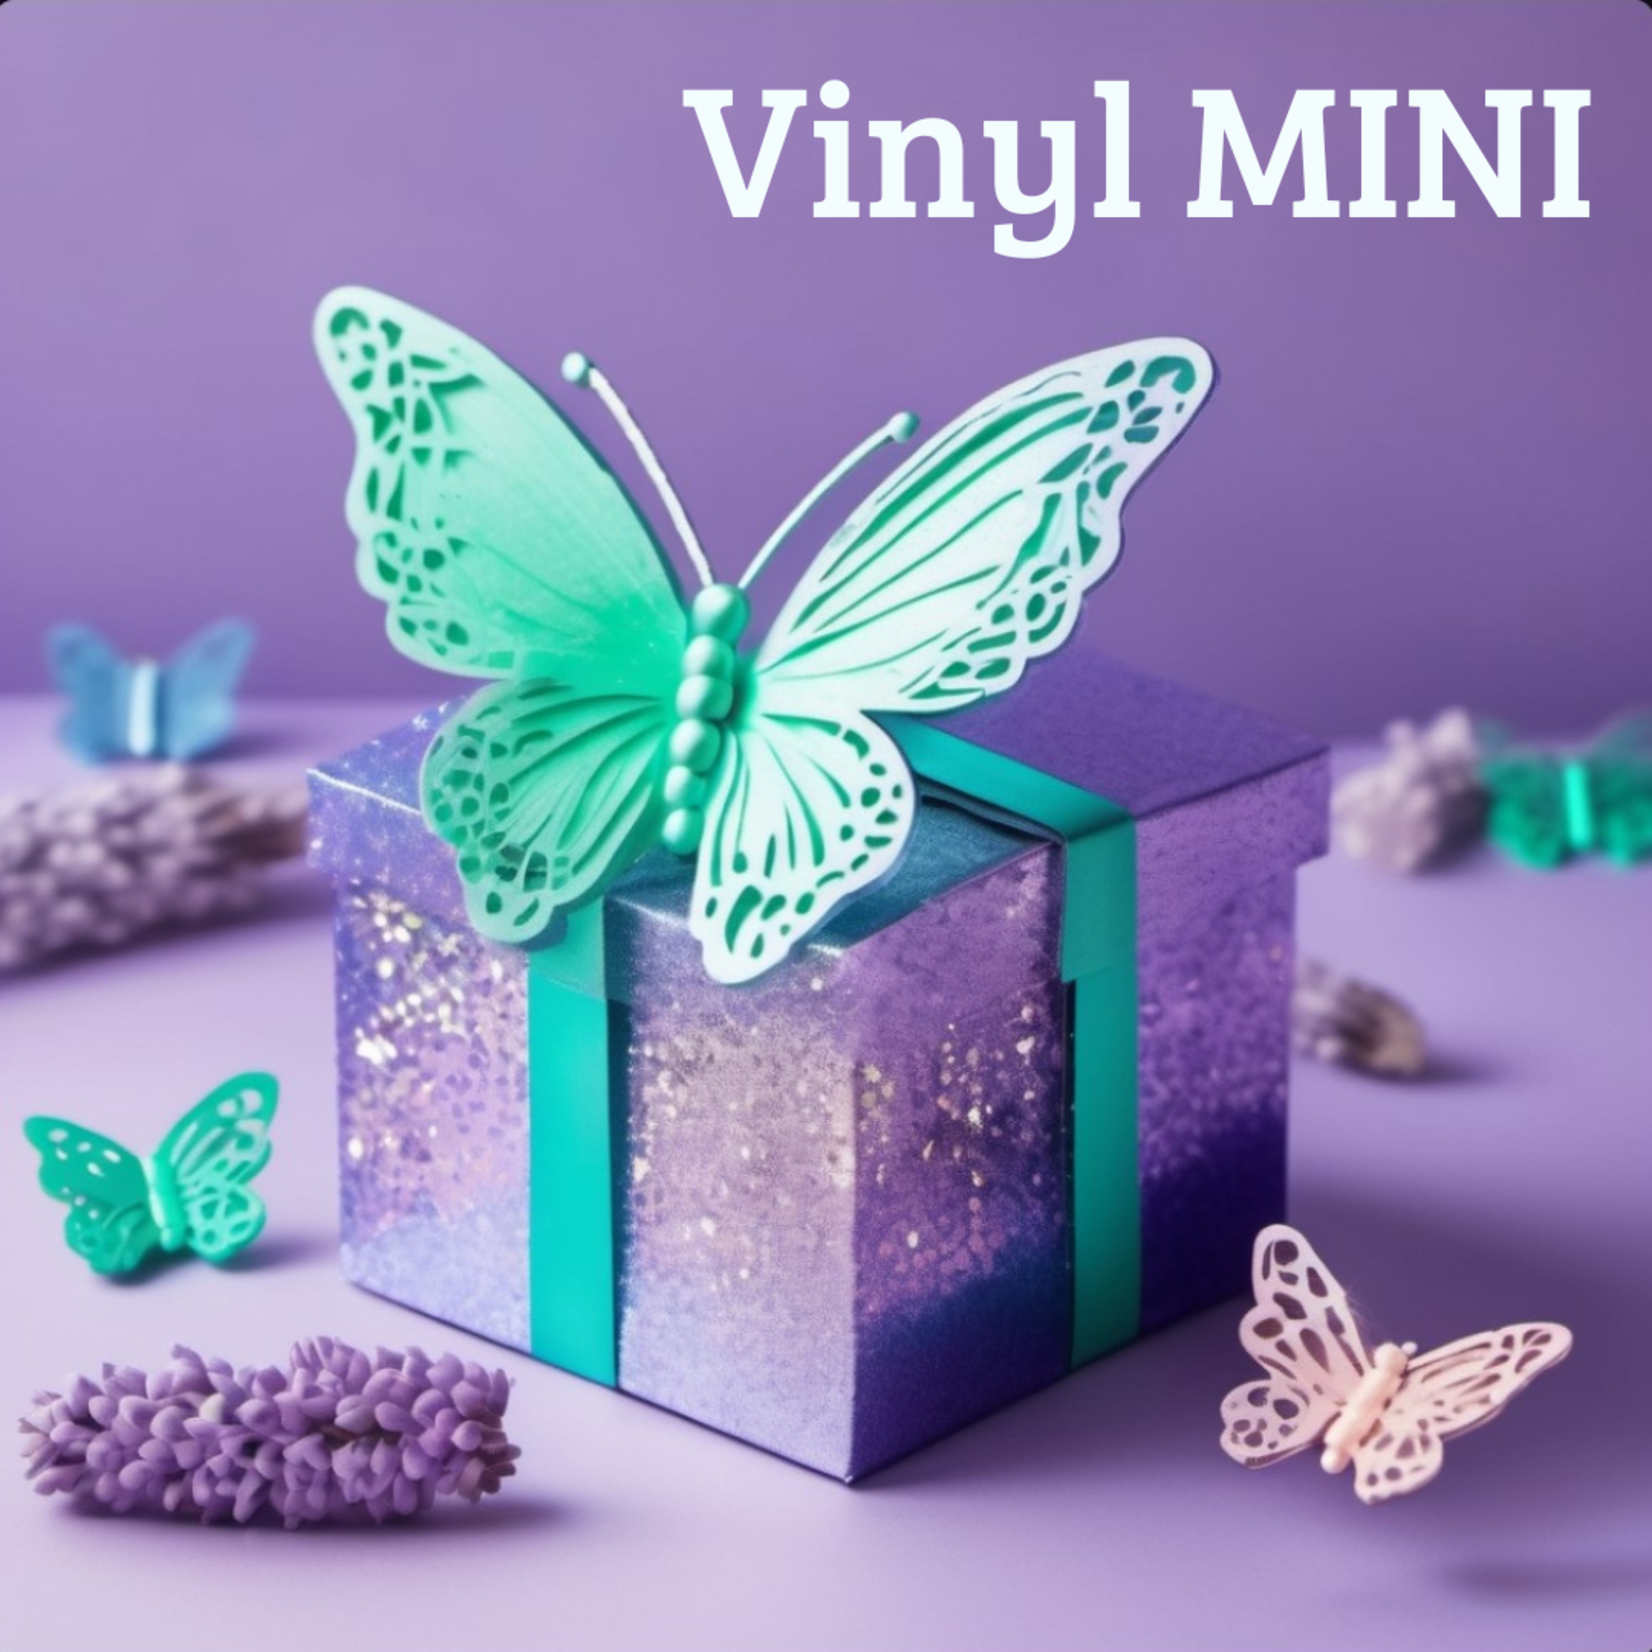 Mystery box vinyl (MINI)